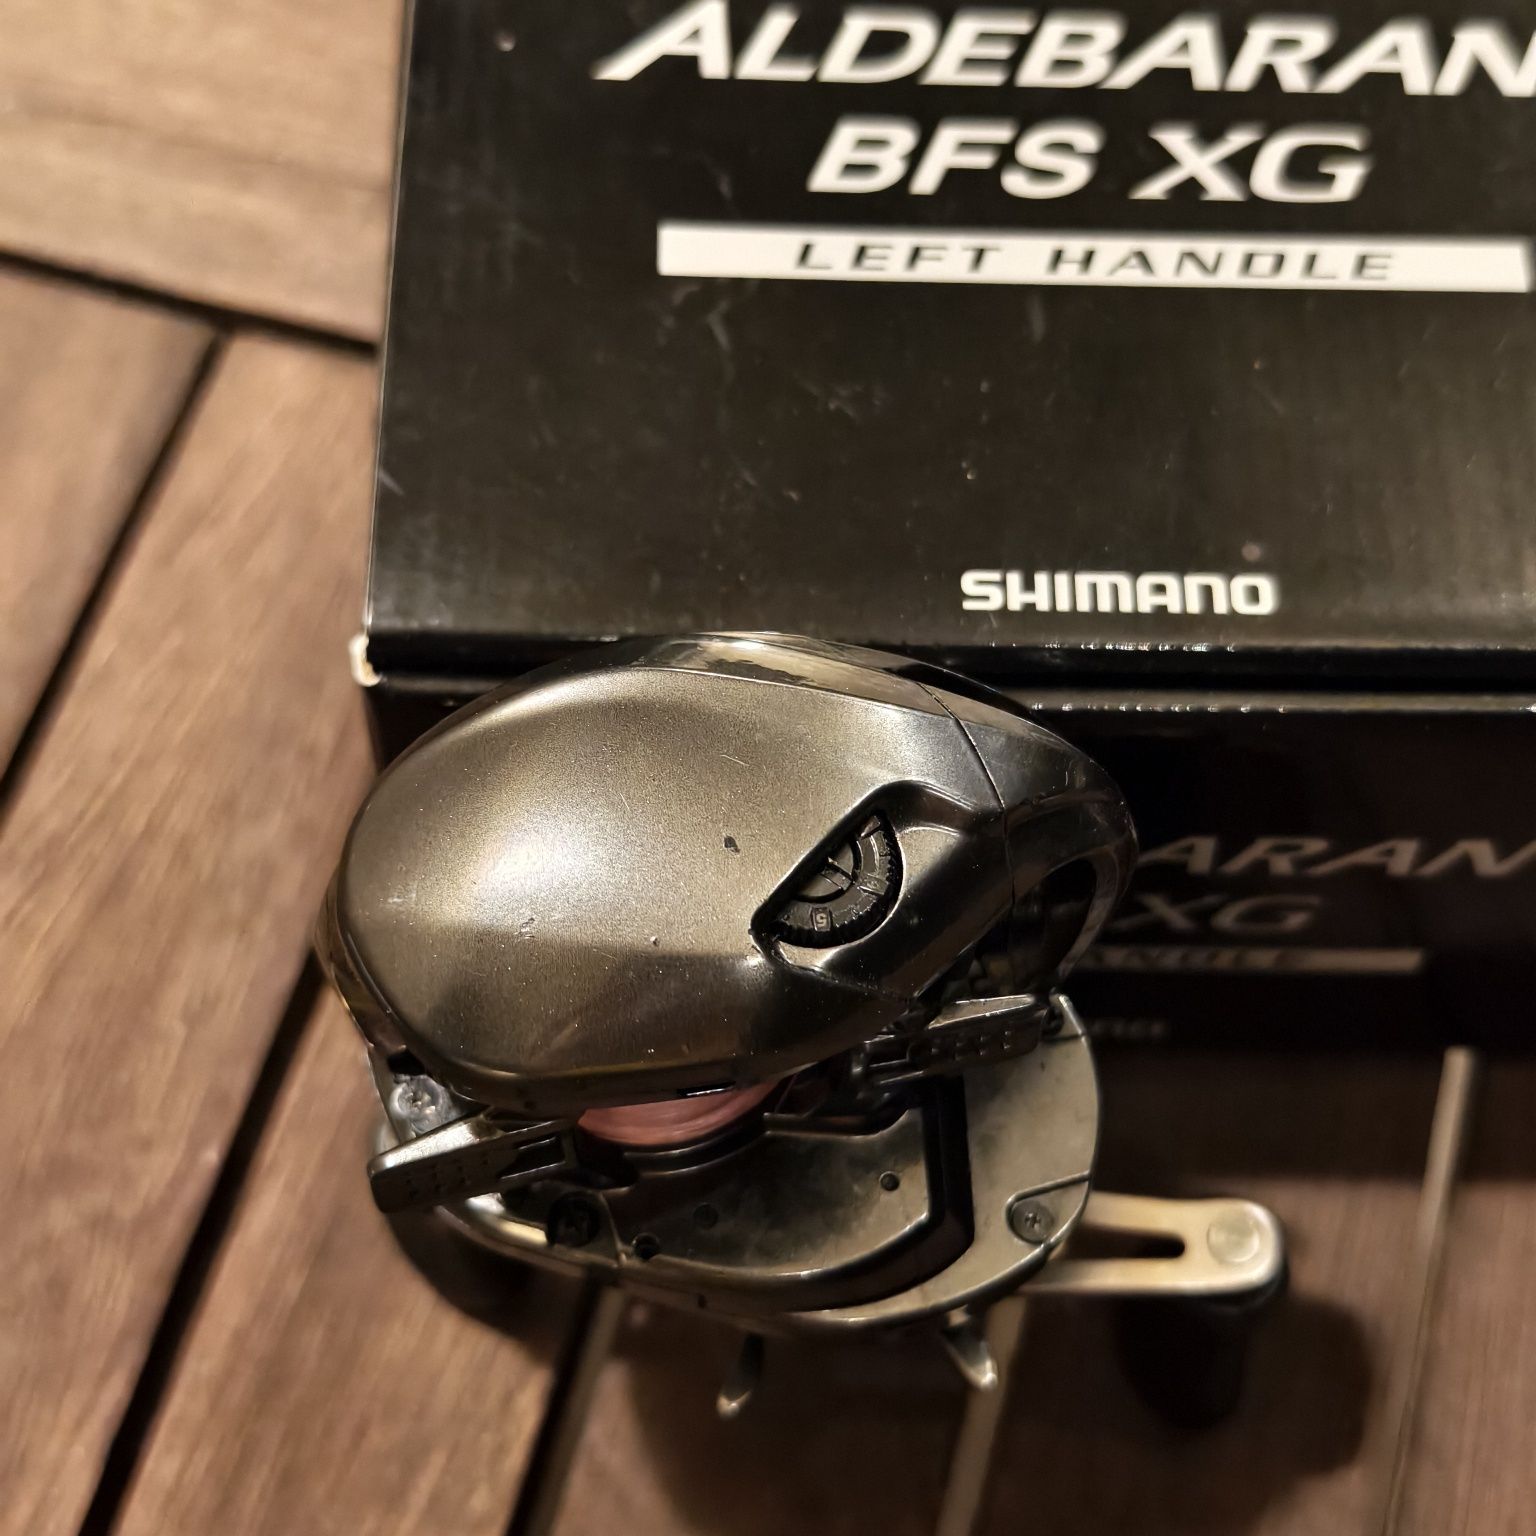 Shimano Aldebaran BFS XG model 2016